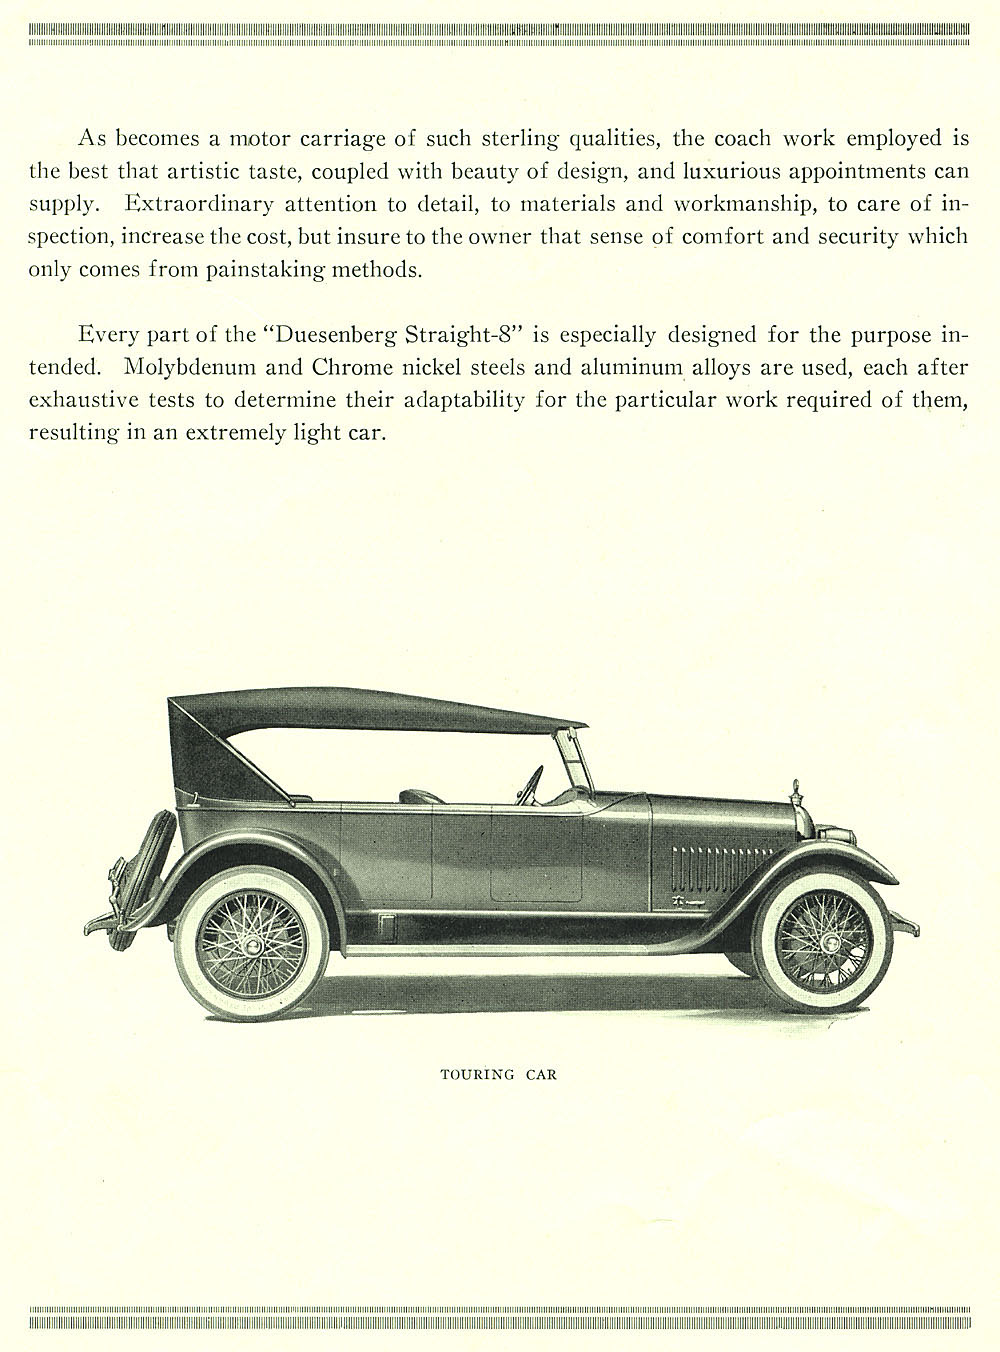 1922 Duesenberg Model A Brochure Page 2